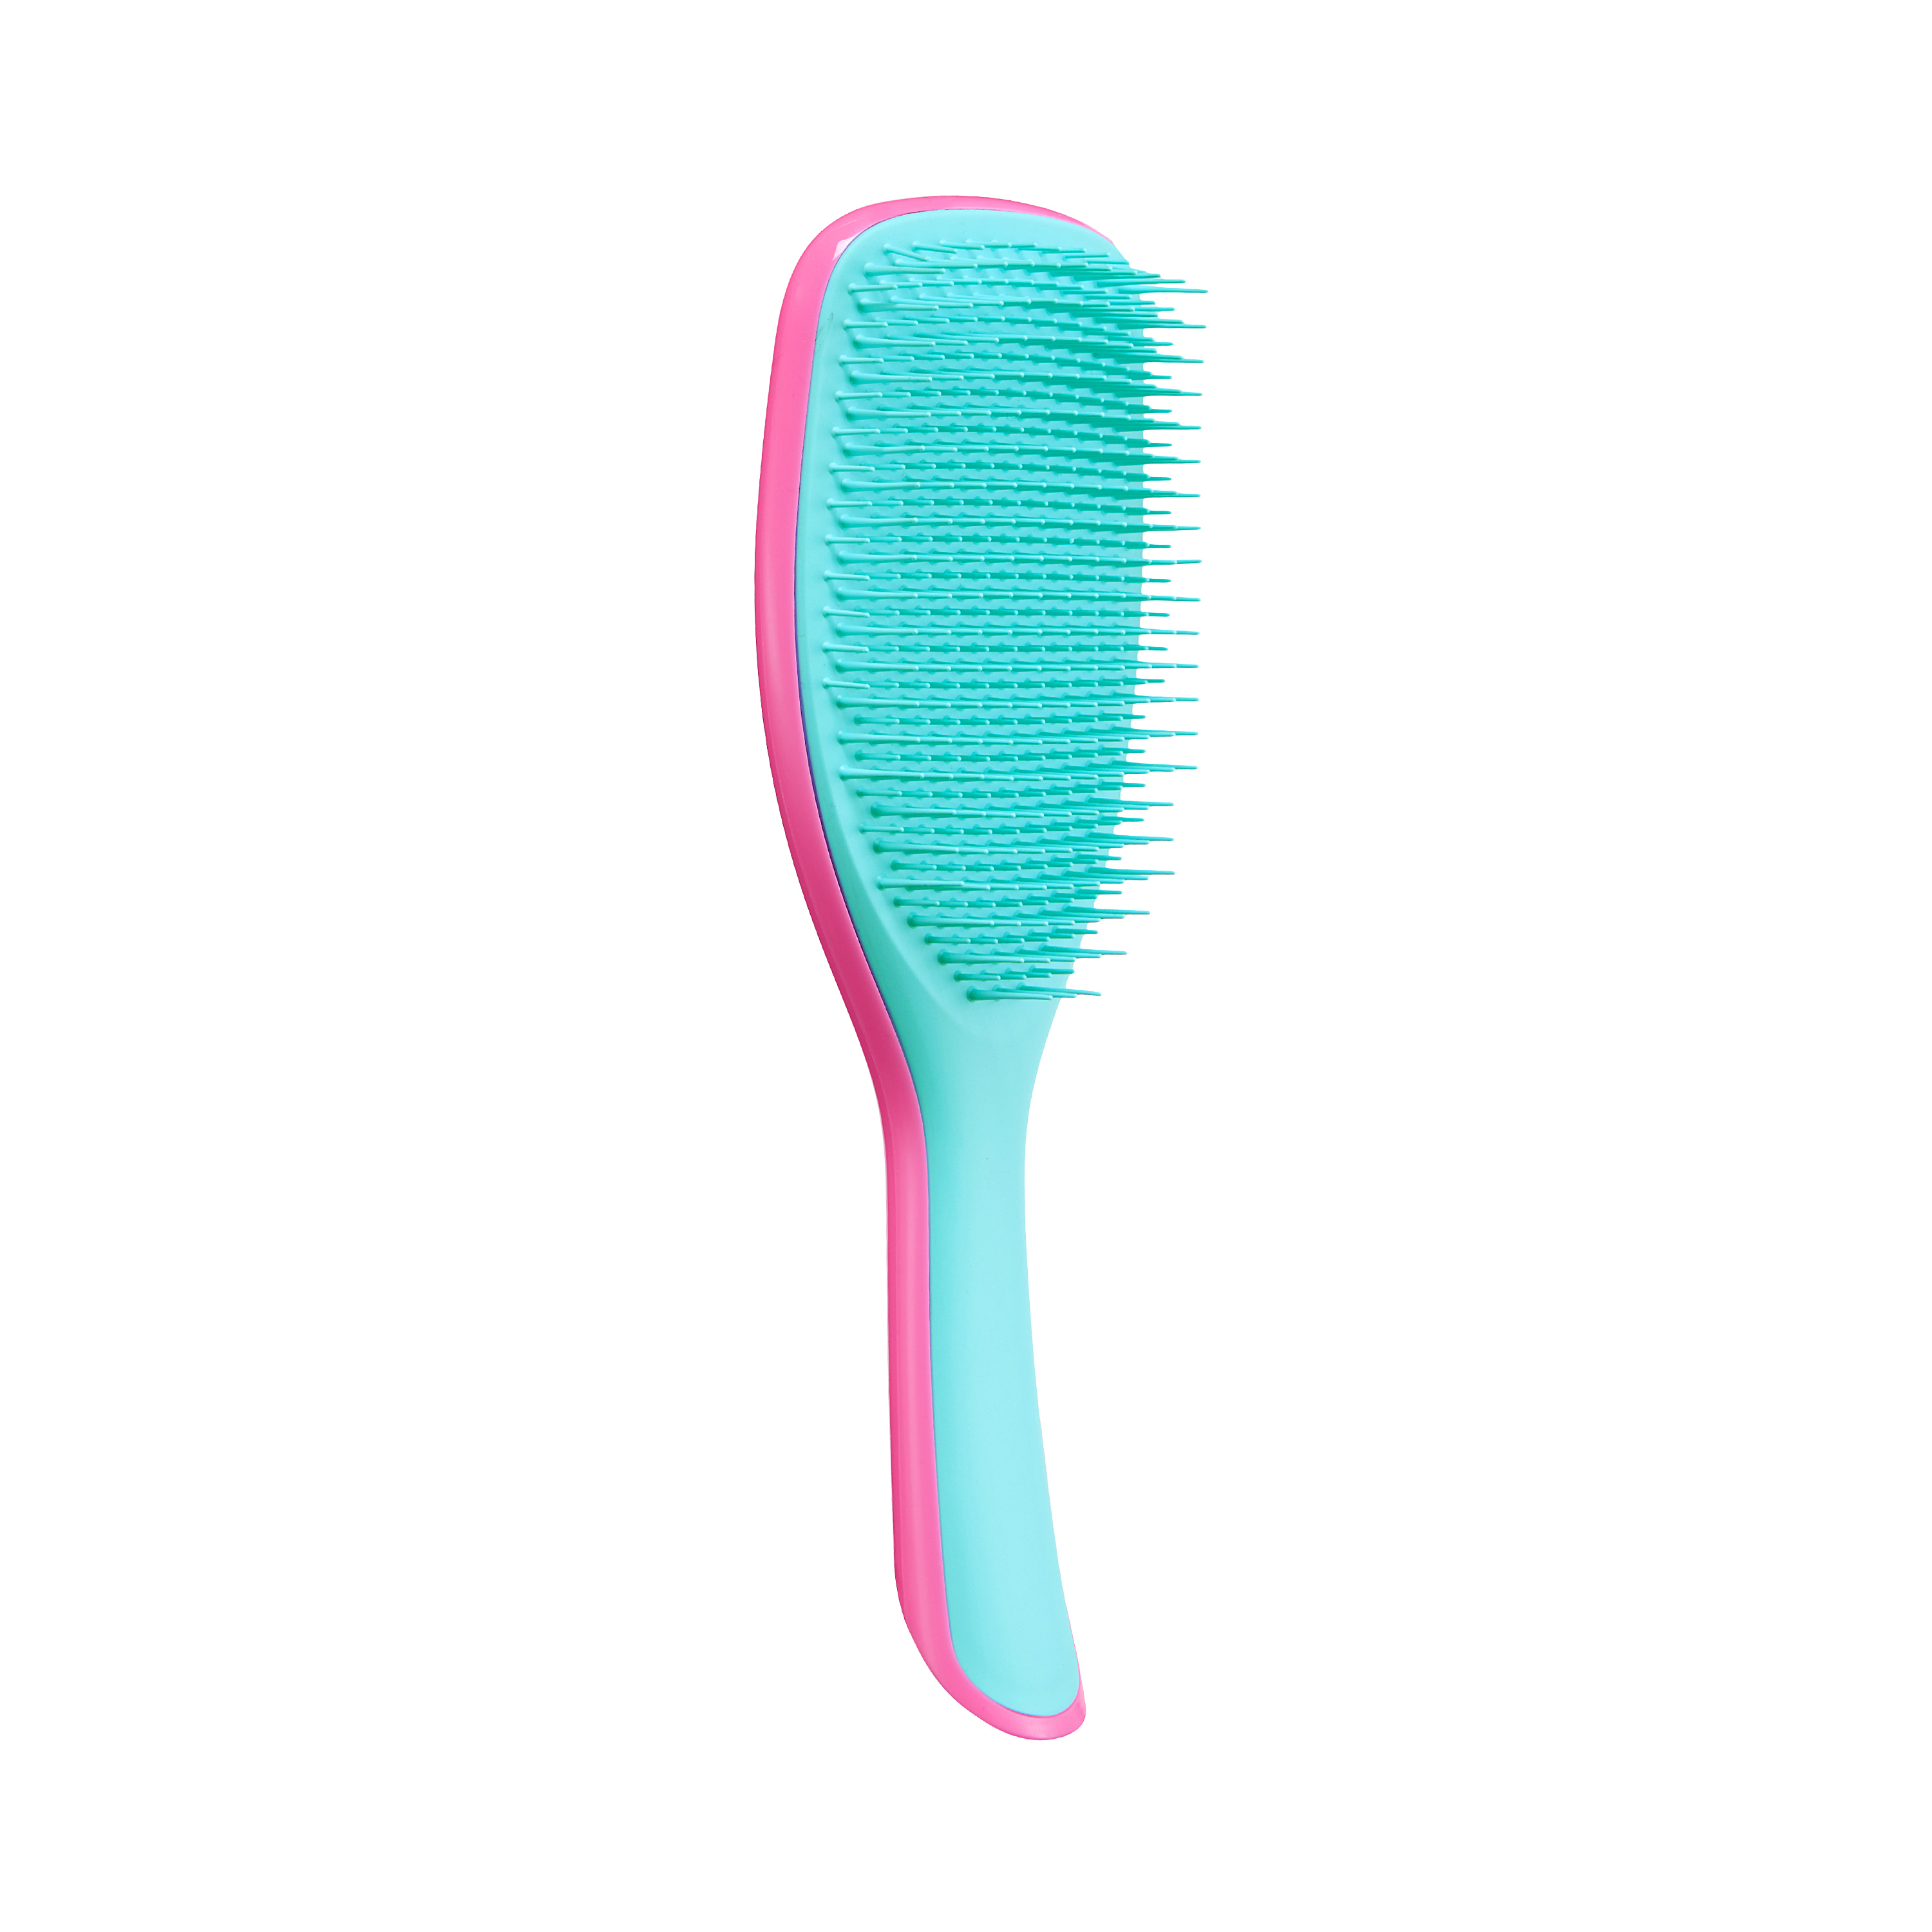  Tangle Teezer The Large Wet D. Saç Fırçası  | Pink Turquoise